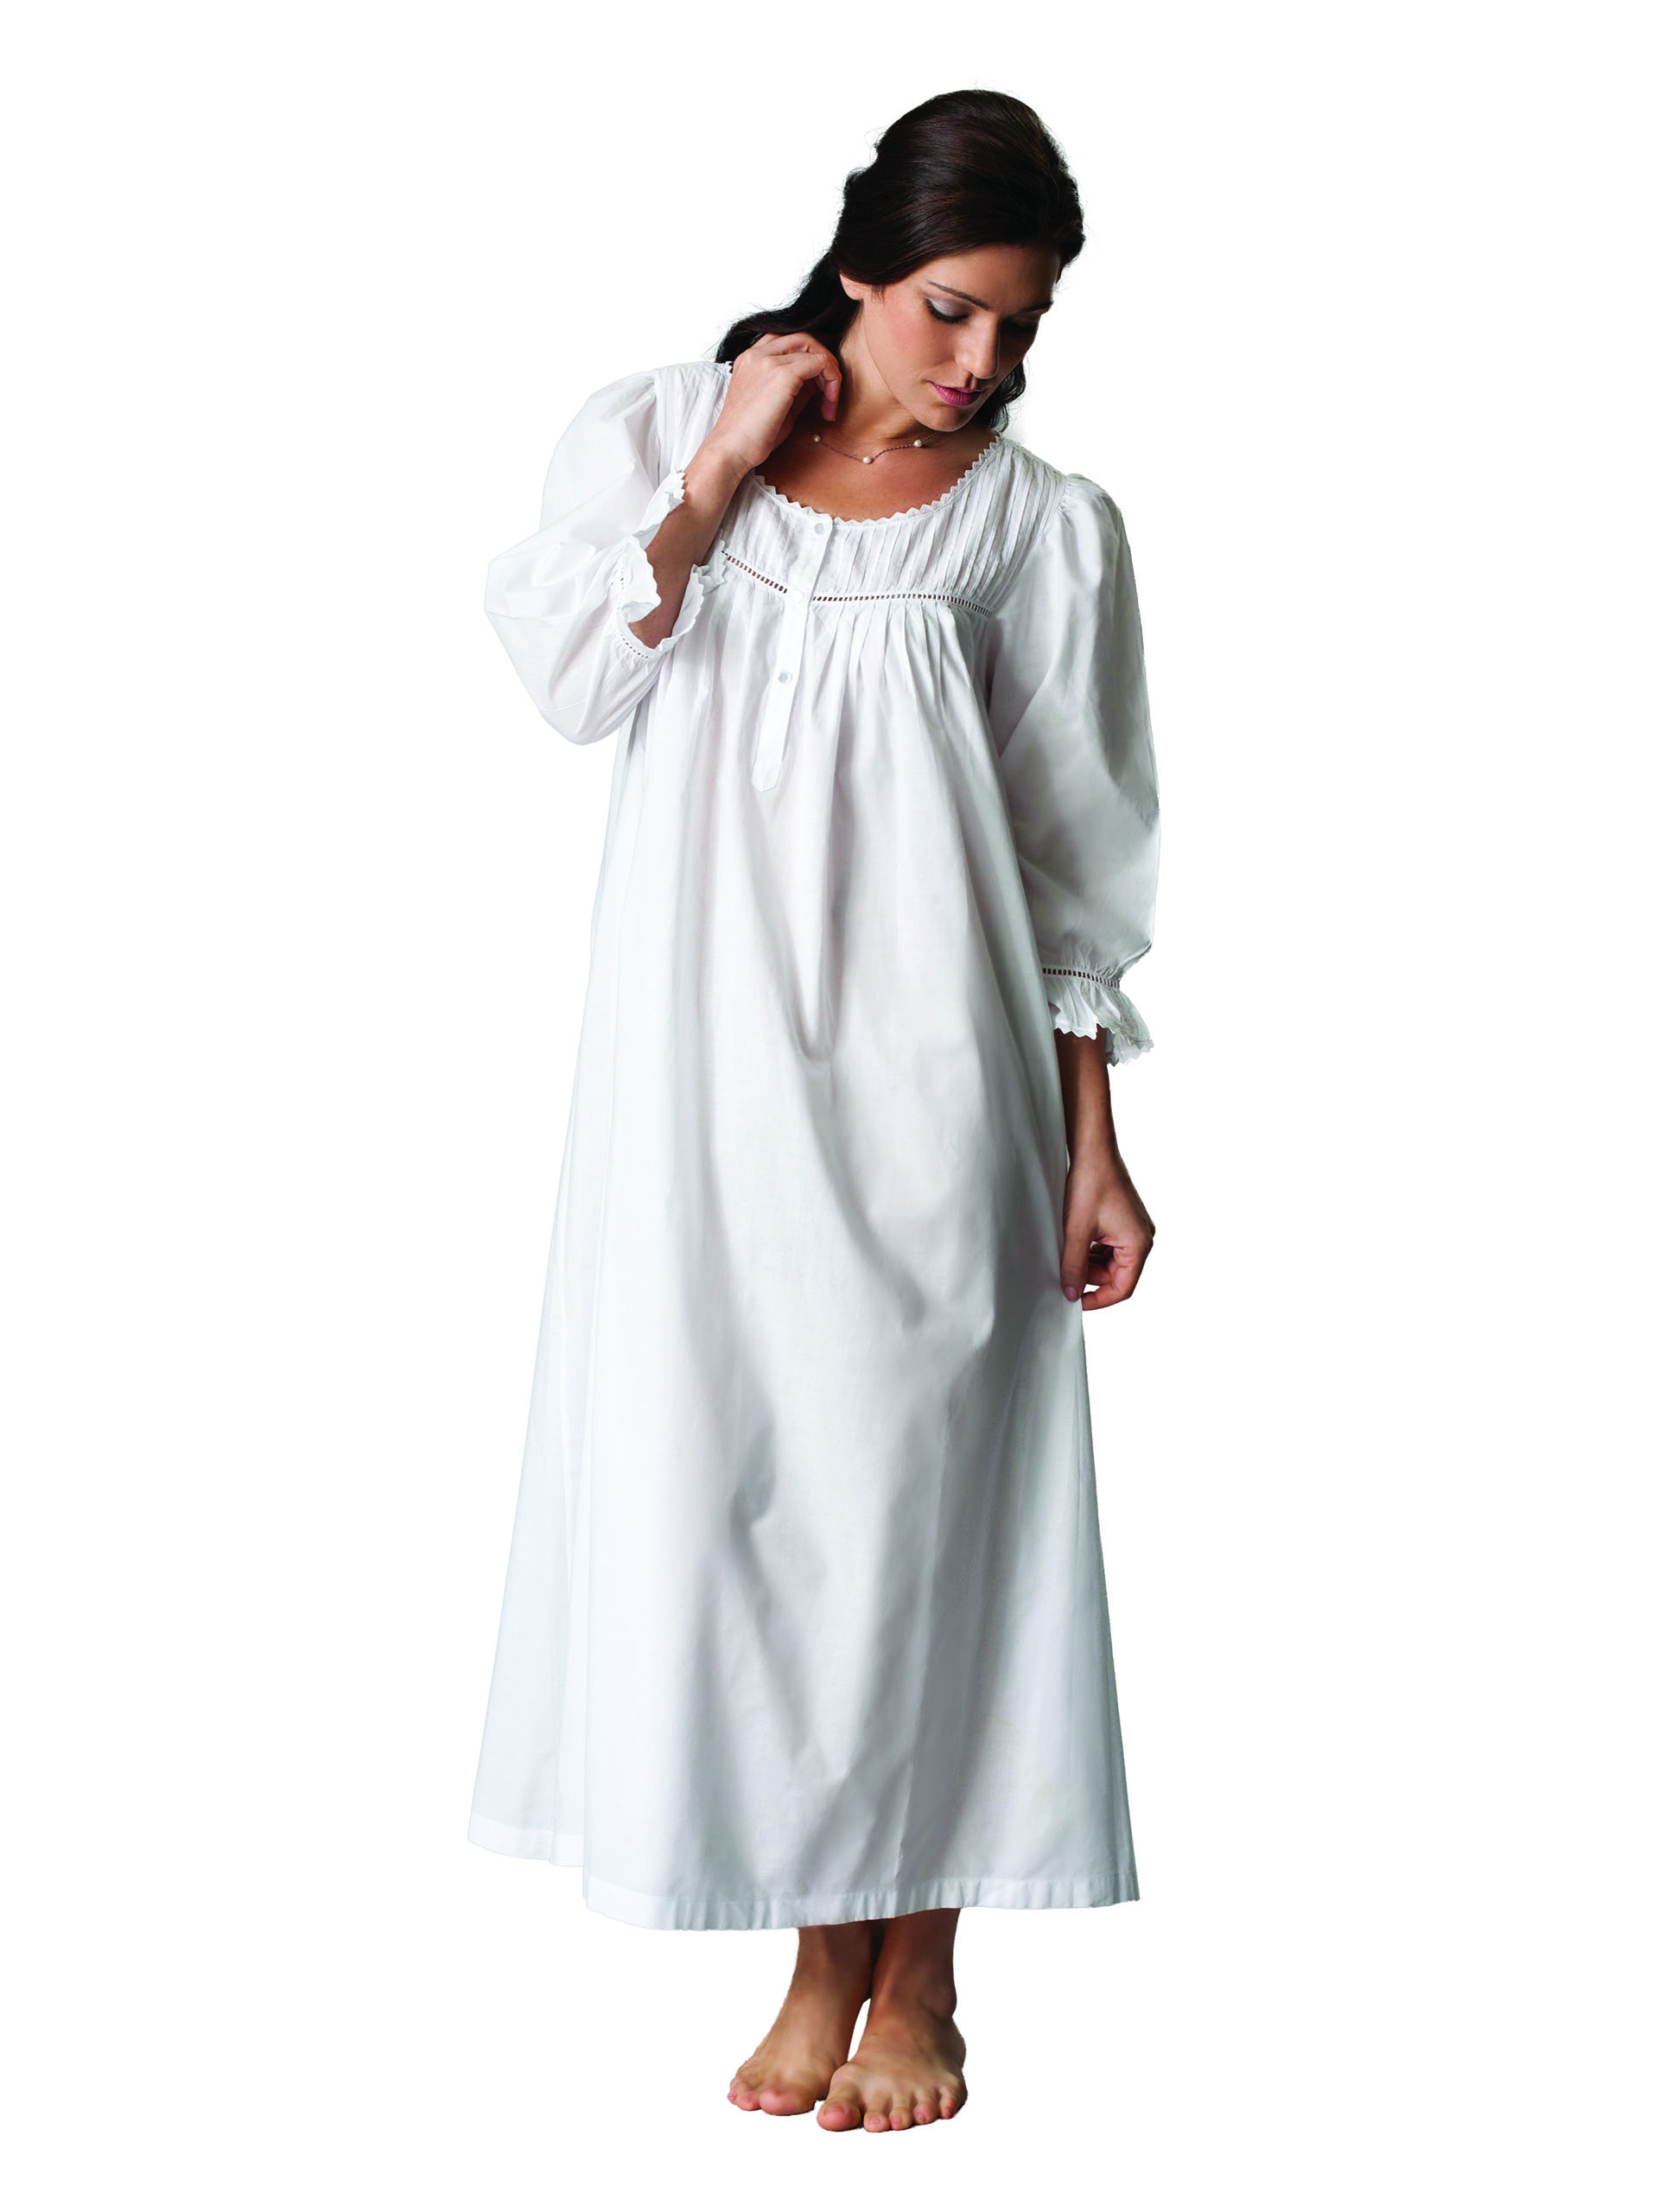 Women Lace Satin Dress Nightdress Floral Sleepwear Split Lingerie White  Sexy | eBay